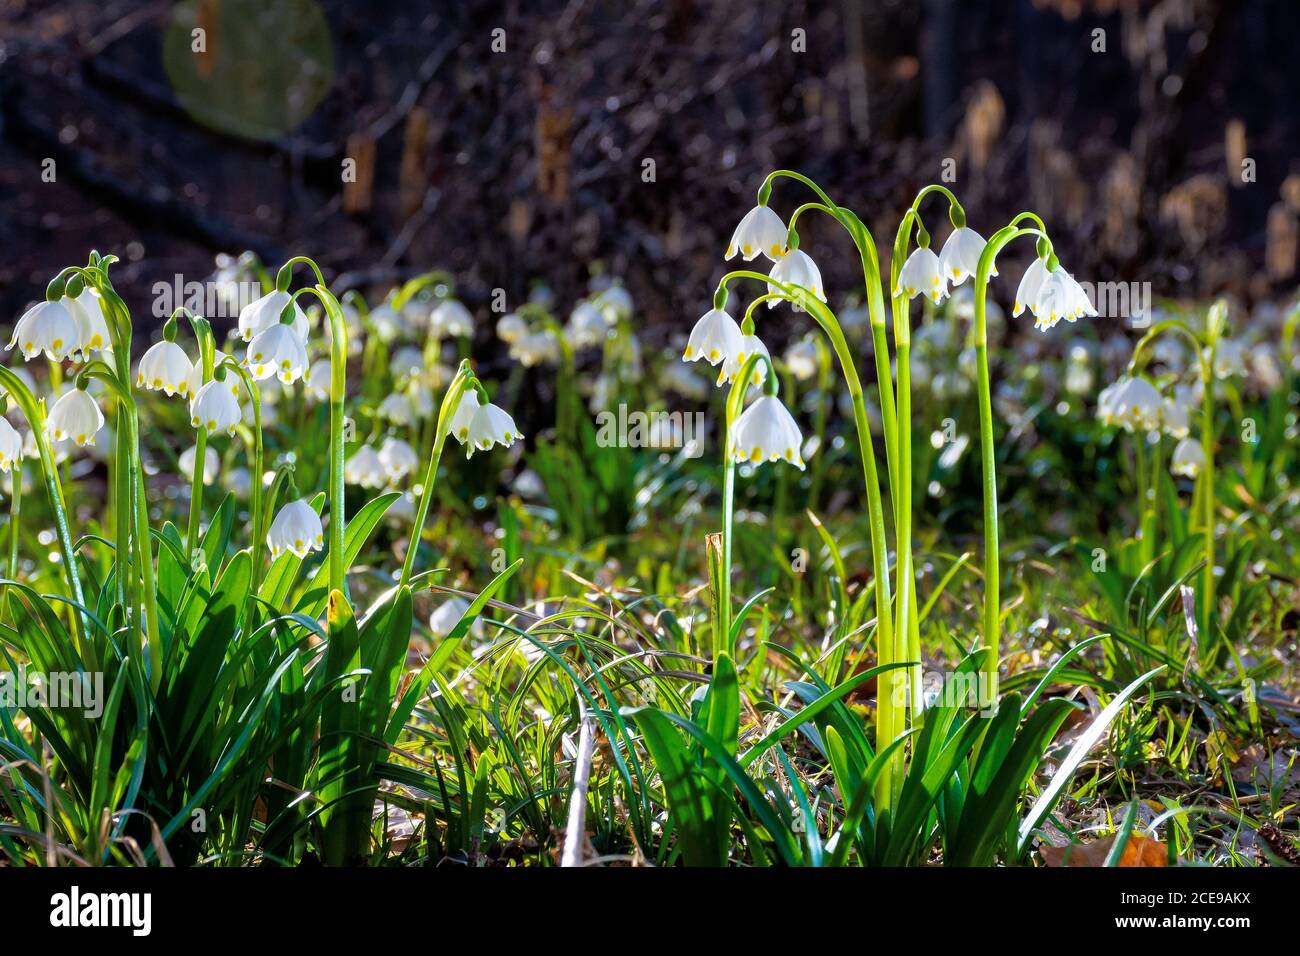 Blumenstrauß auf der Waldlichtung. Frühling Natur Hintergrund an einem sonnigen Tag Stockfoto